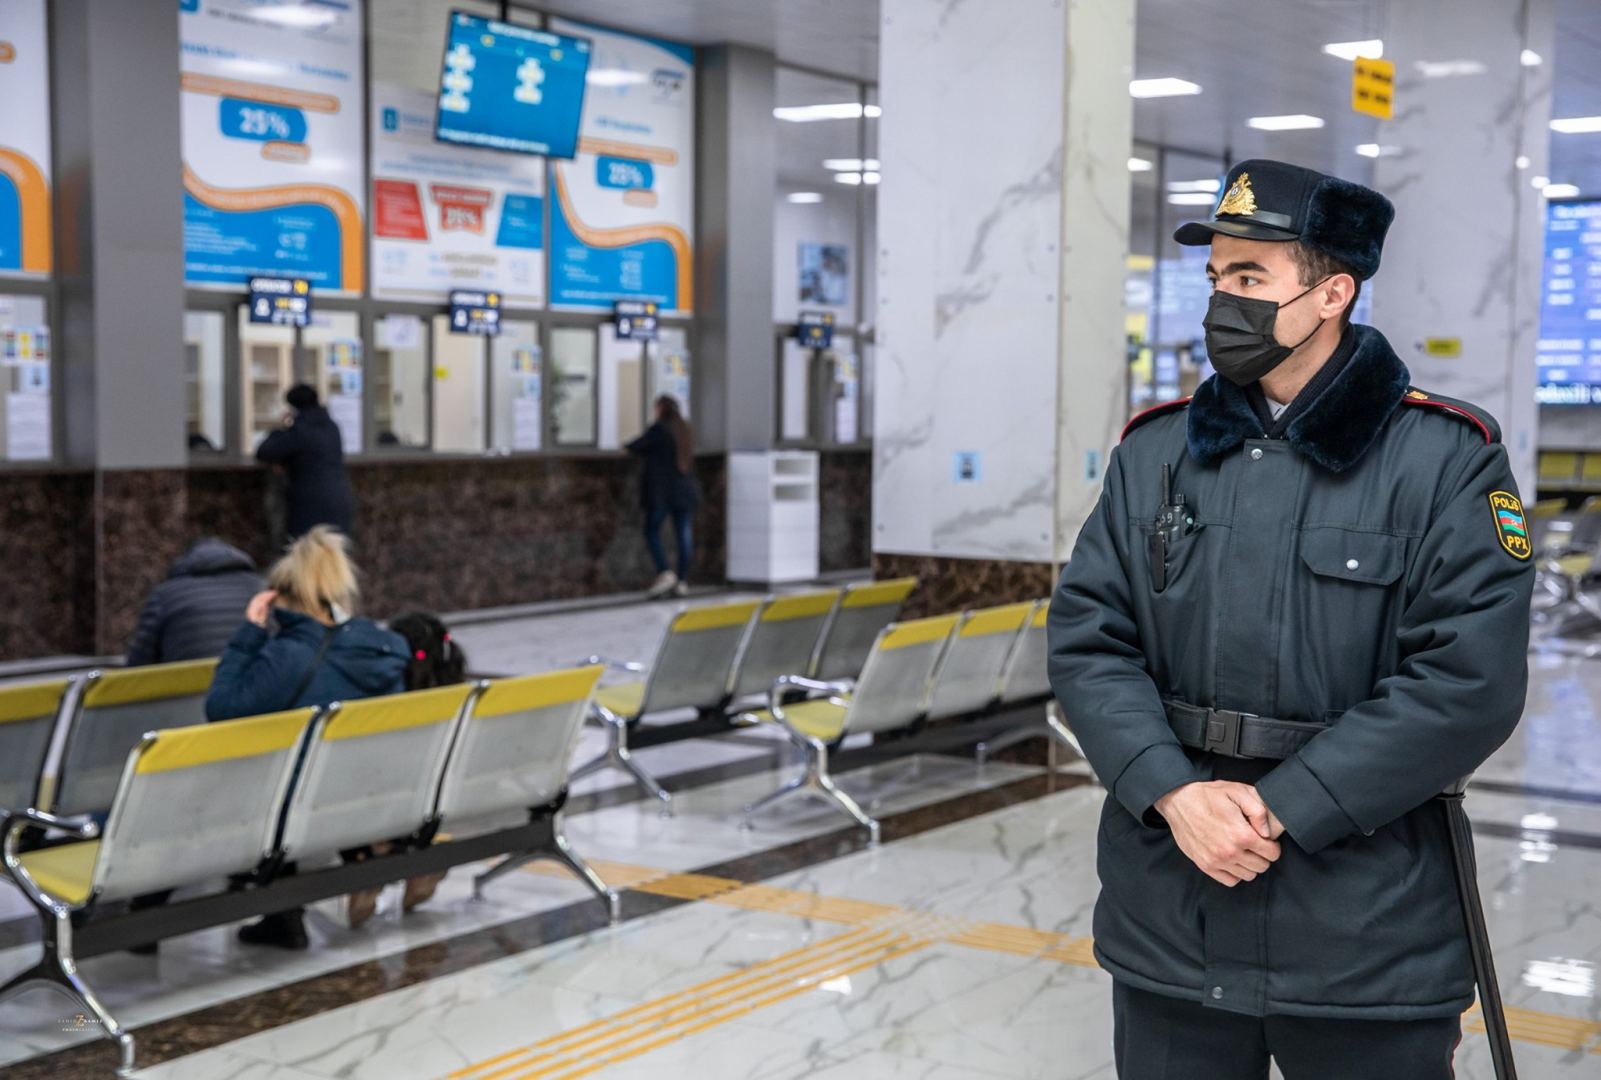 ЗАО «Азербайджанские железные дороги» возвращает деньги за приобретенные билеты (ФОТО)